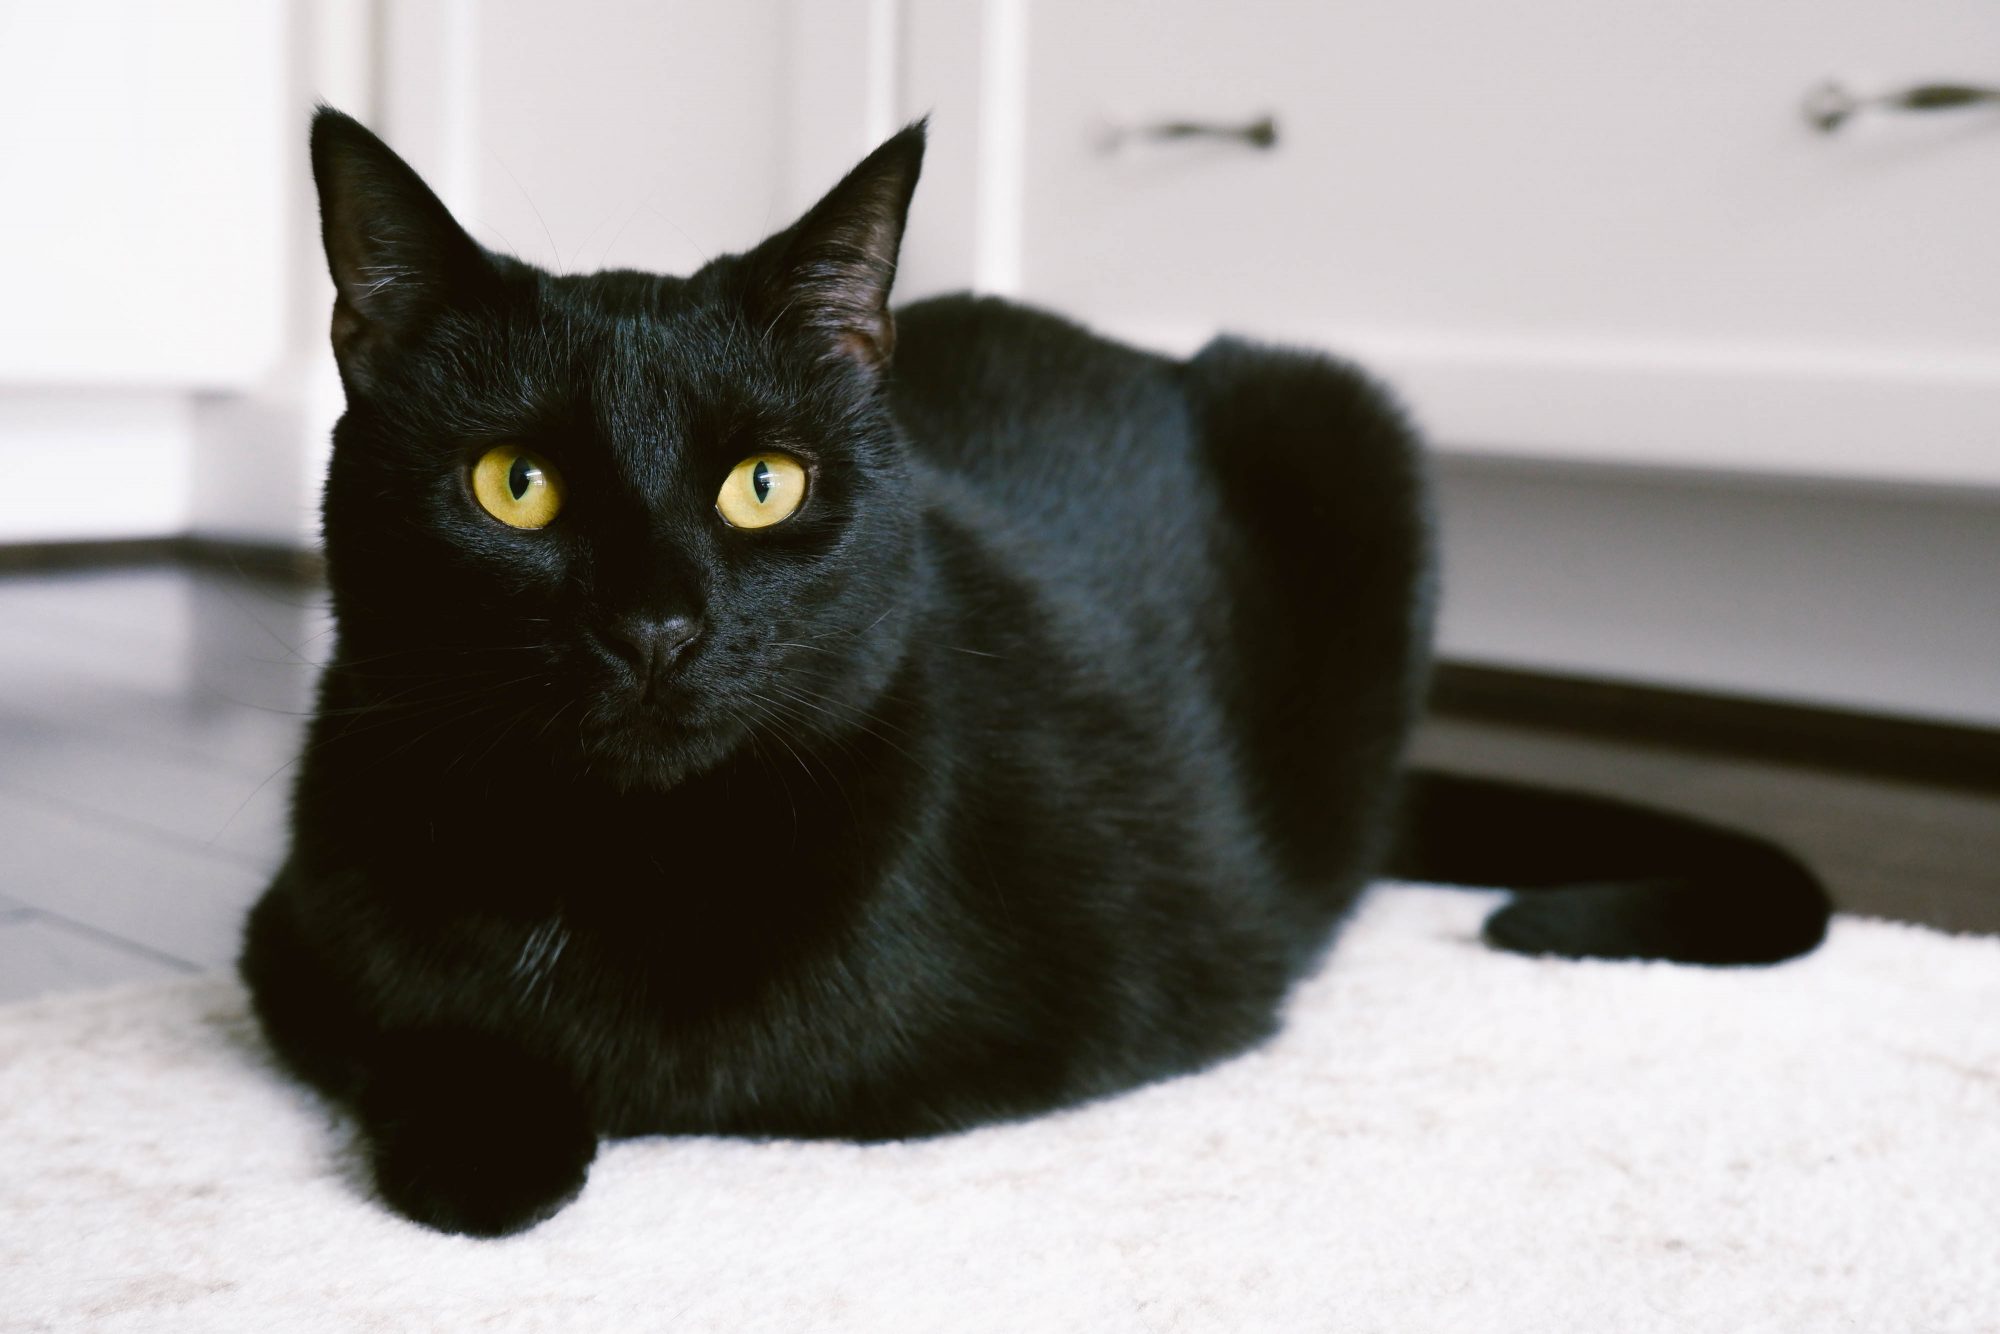 Mèo đen từ lâu được coi là linh vật may mắn nhưng nhiều người còn tin rằng chúng mang lại điềm xấu. Hãy xem hình ảnh để tìm hiểu sự thật về mèo đen và điềm lành hay xấu.